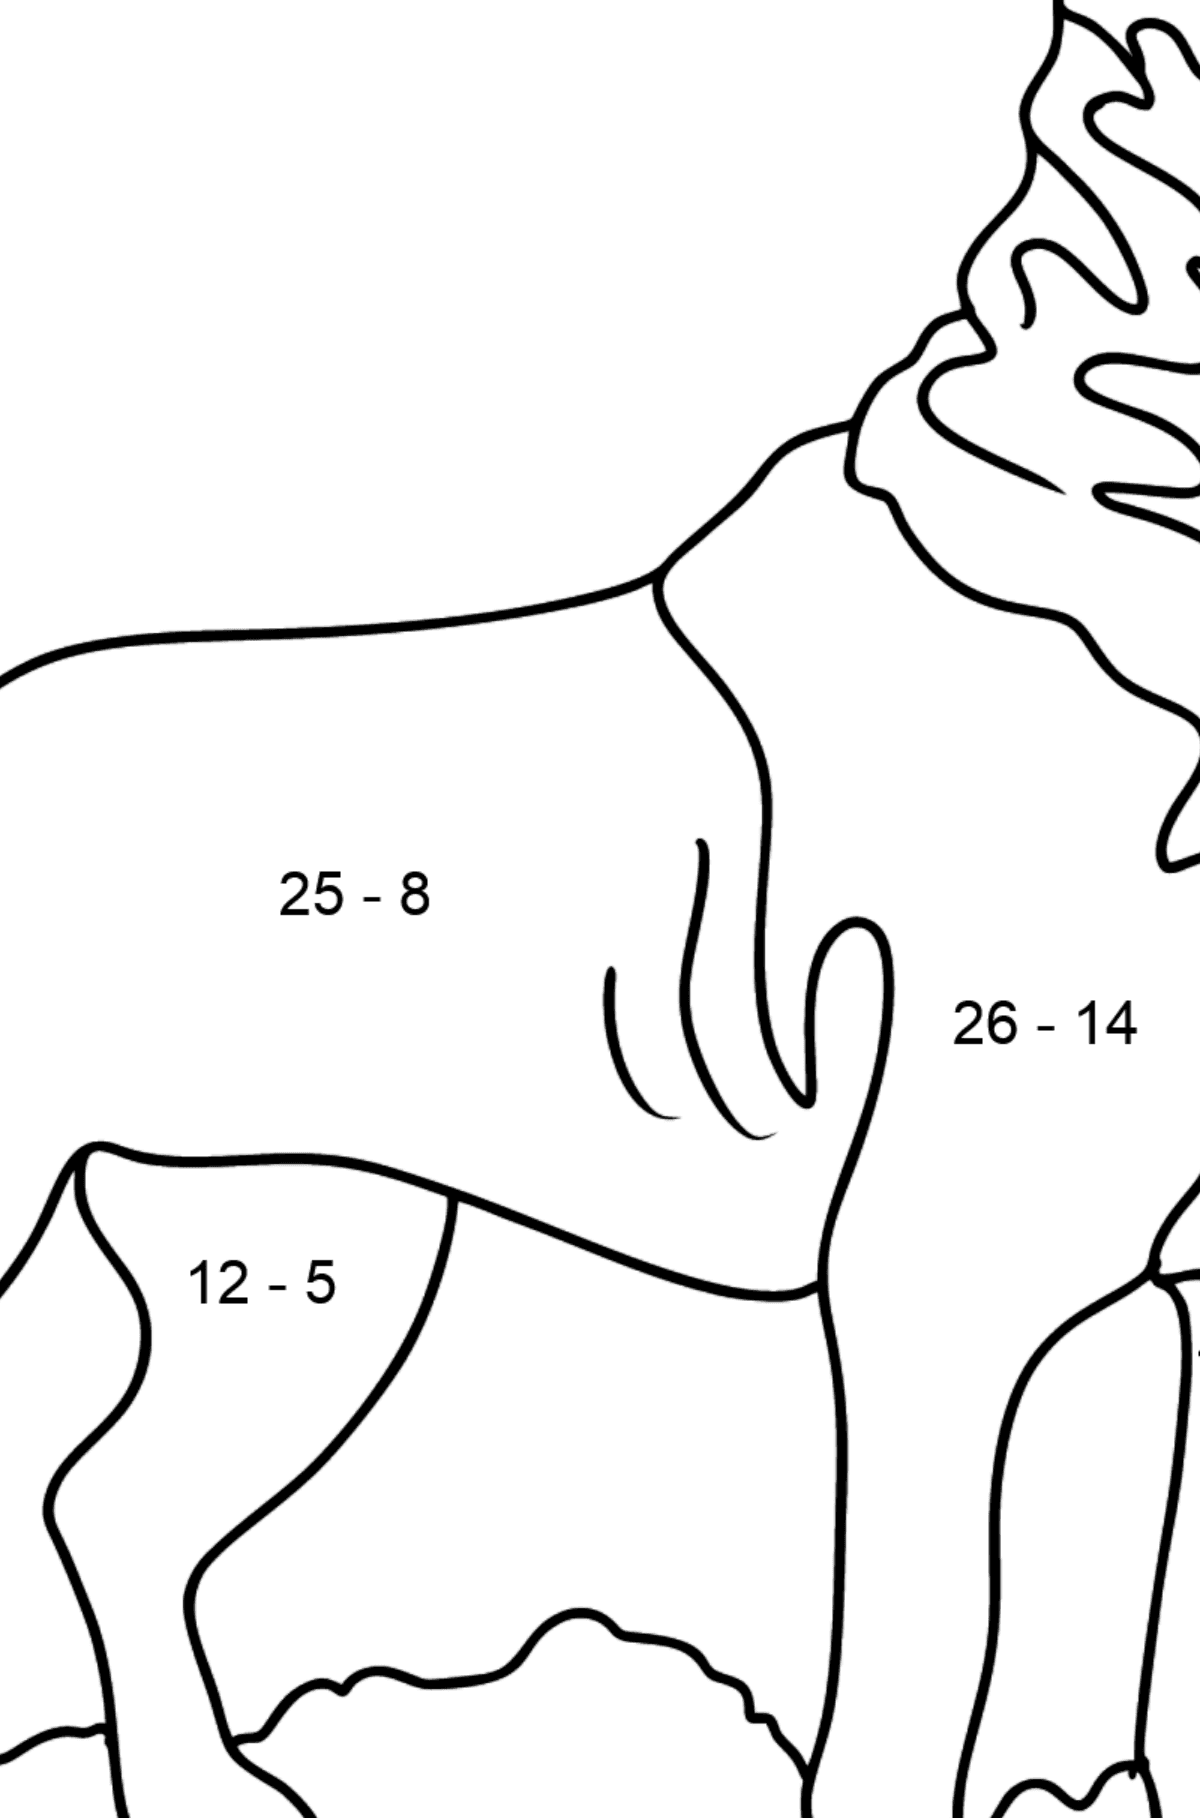 Rottweiler Ausmalbild - Mathe Ausmalbilder - Subtraktion für Kinder